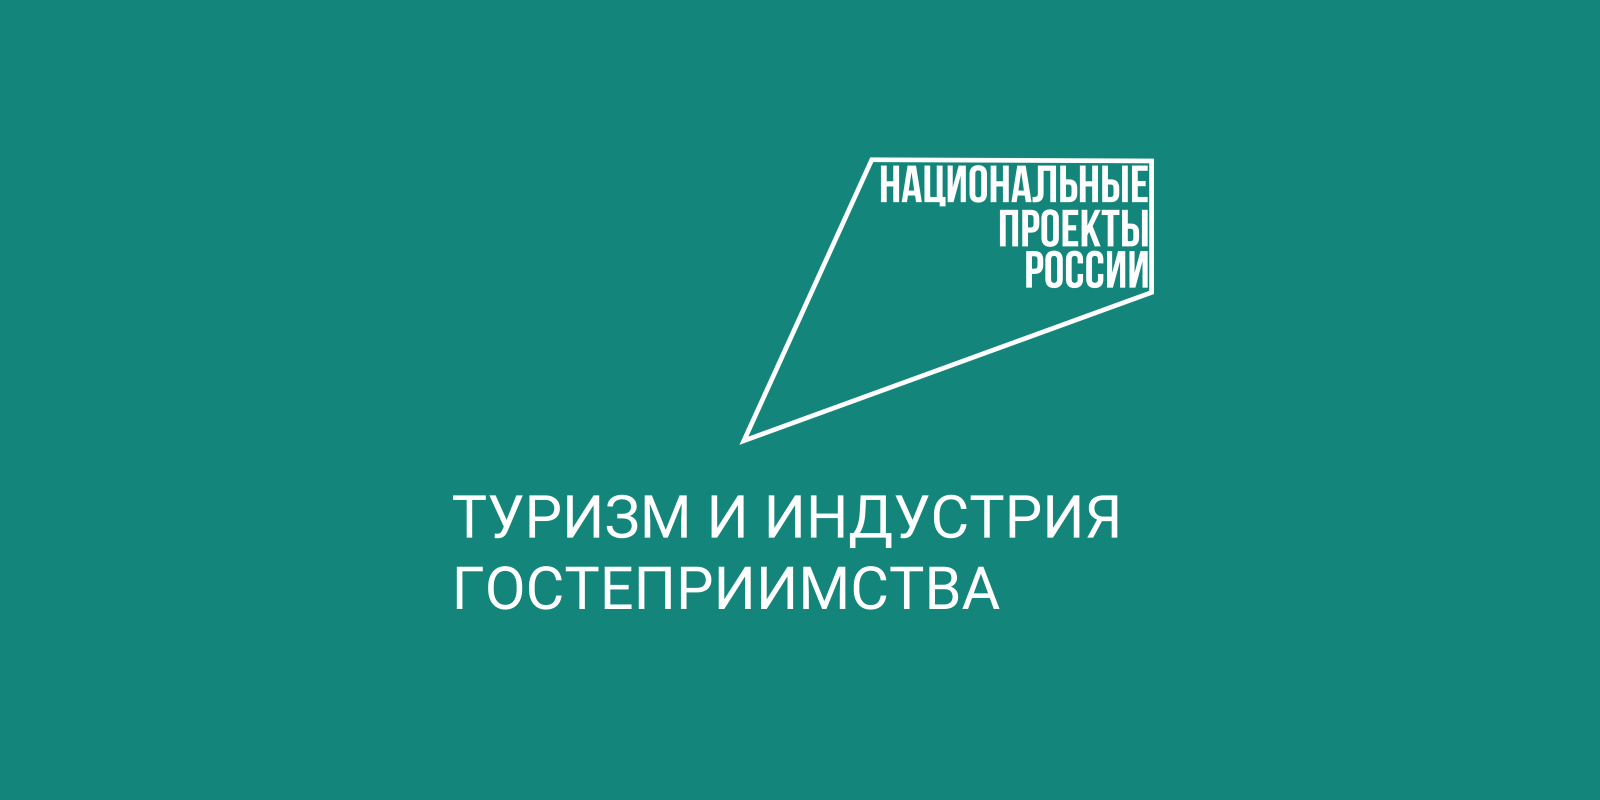 19 декабря главной на выставке-форуме «Россия»  станет Вологодская область.